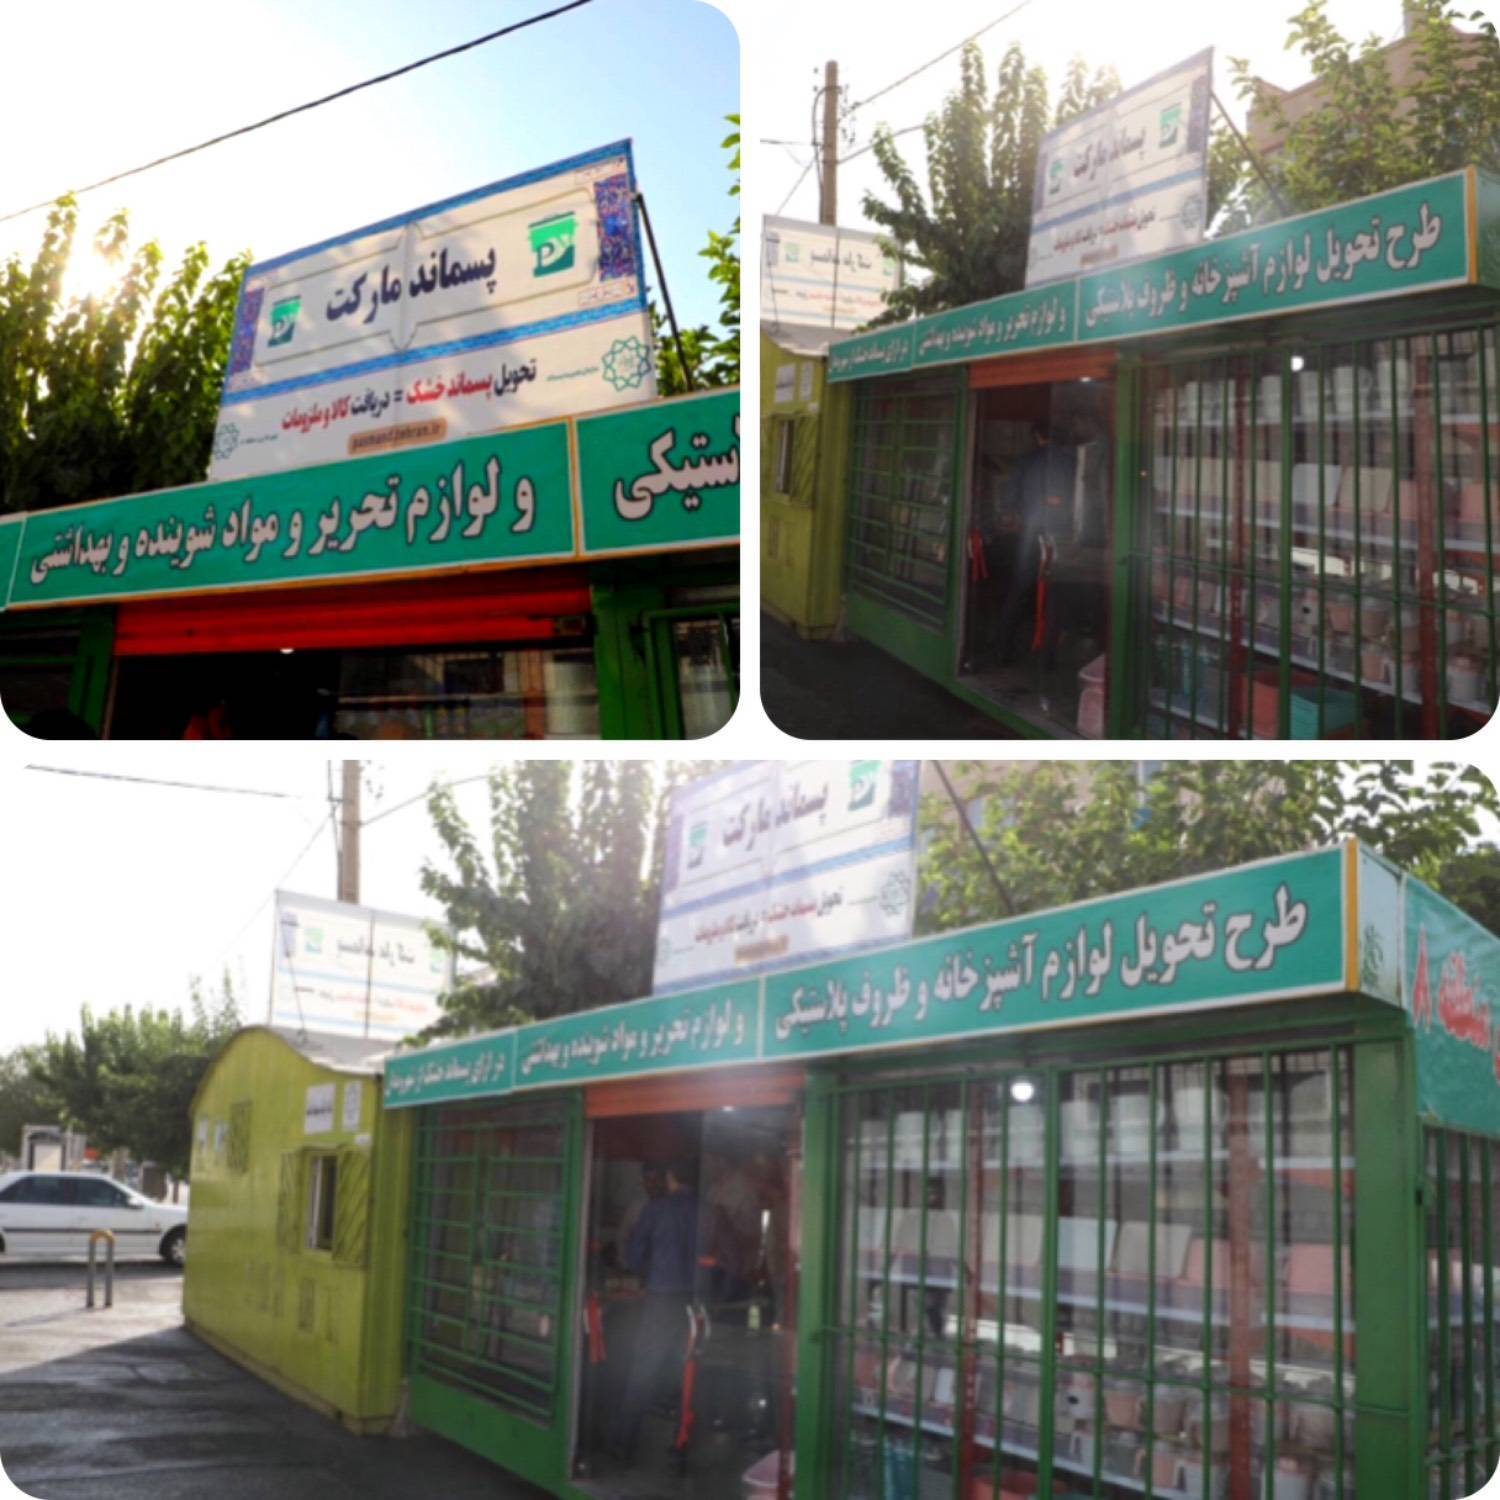 افتتاح محلی دیگر برای دریافت پسماند در شرق تهران